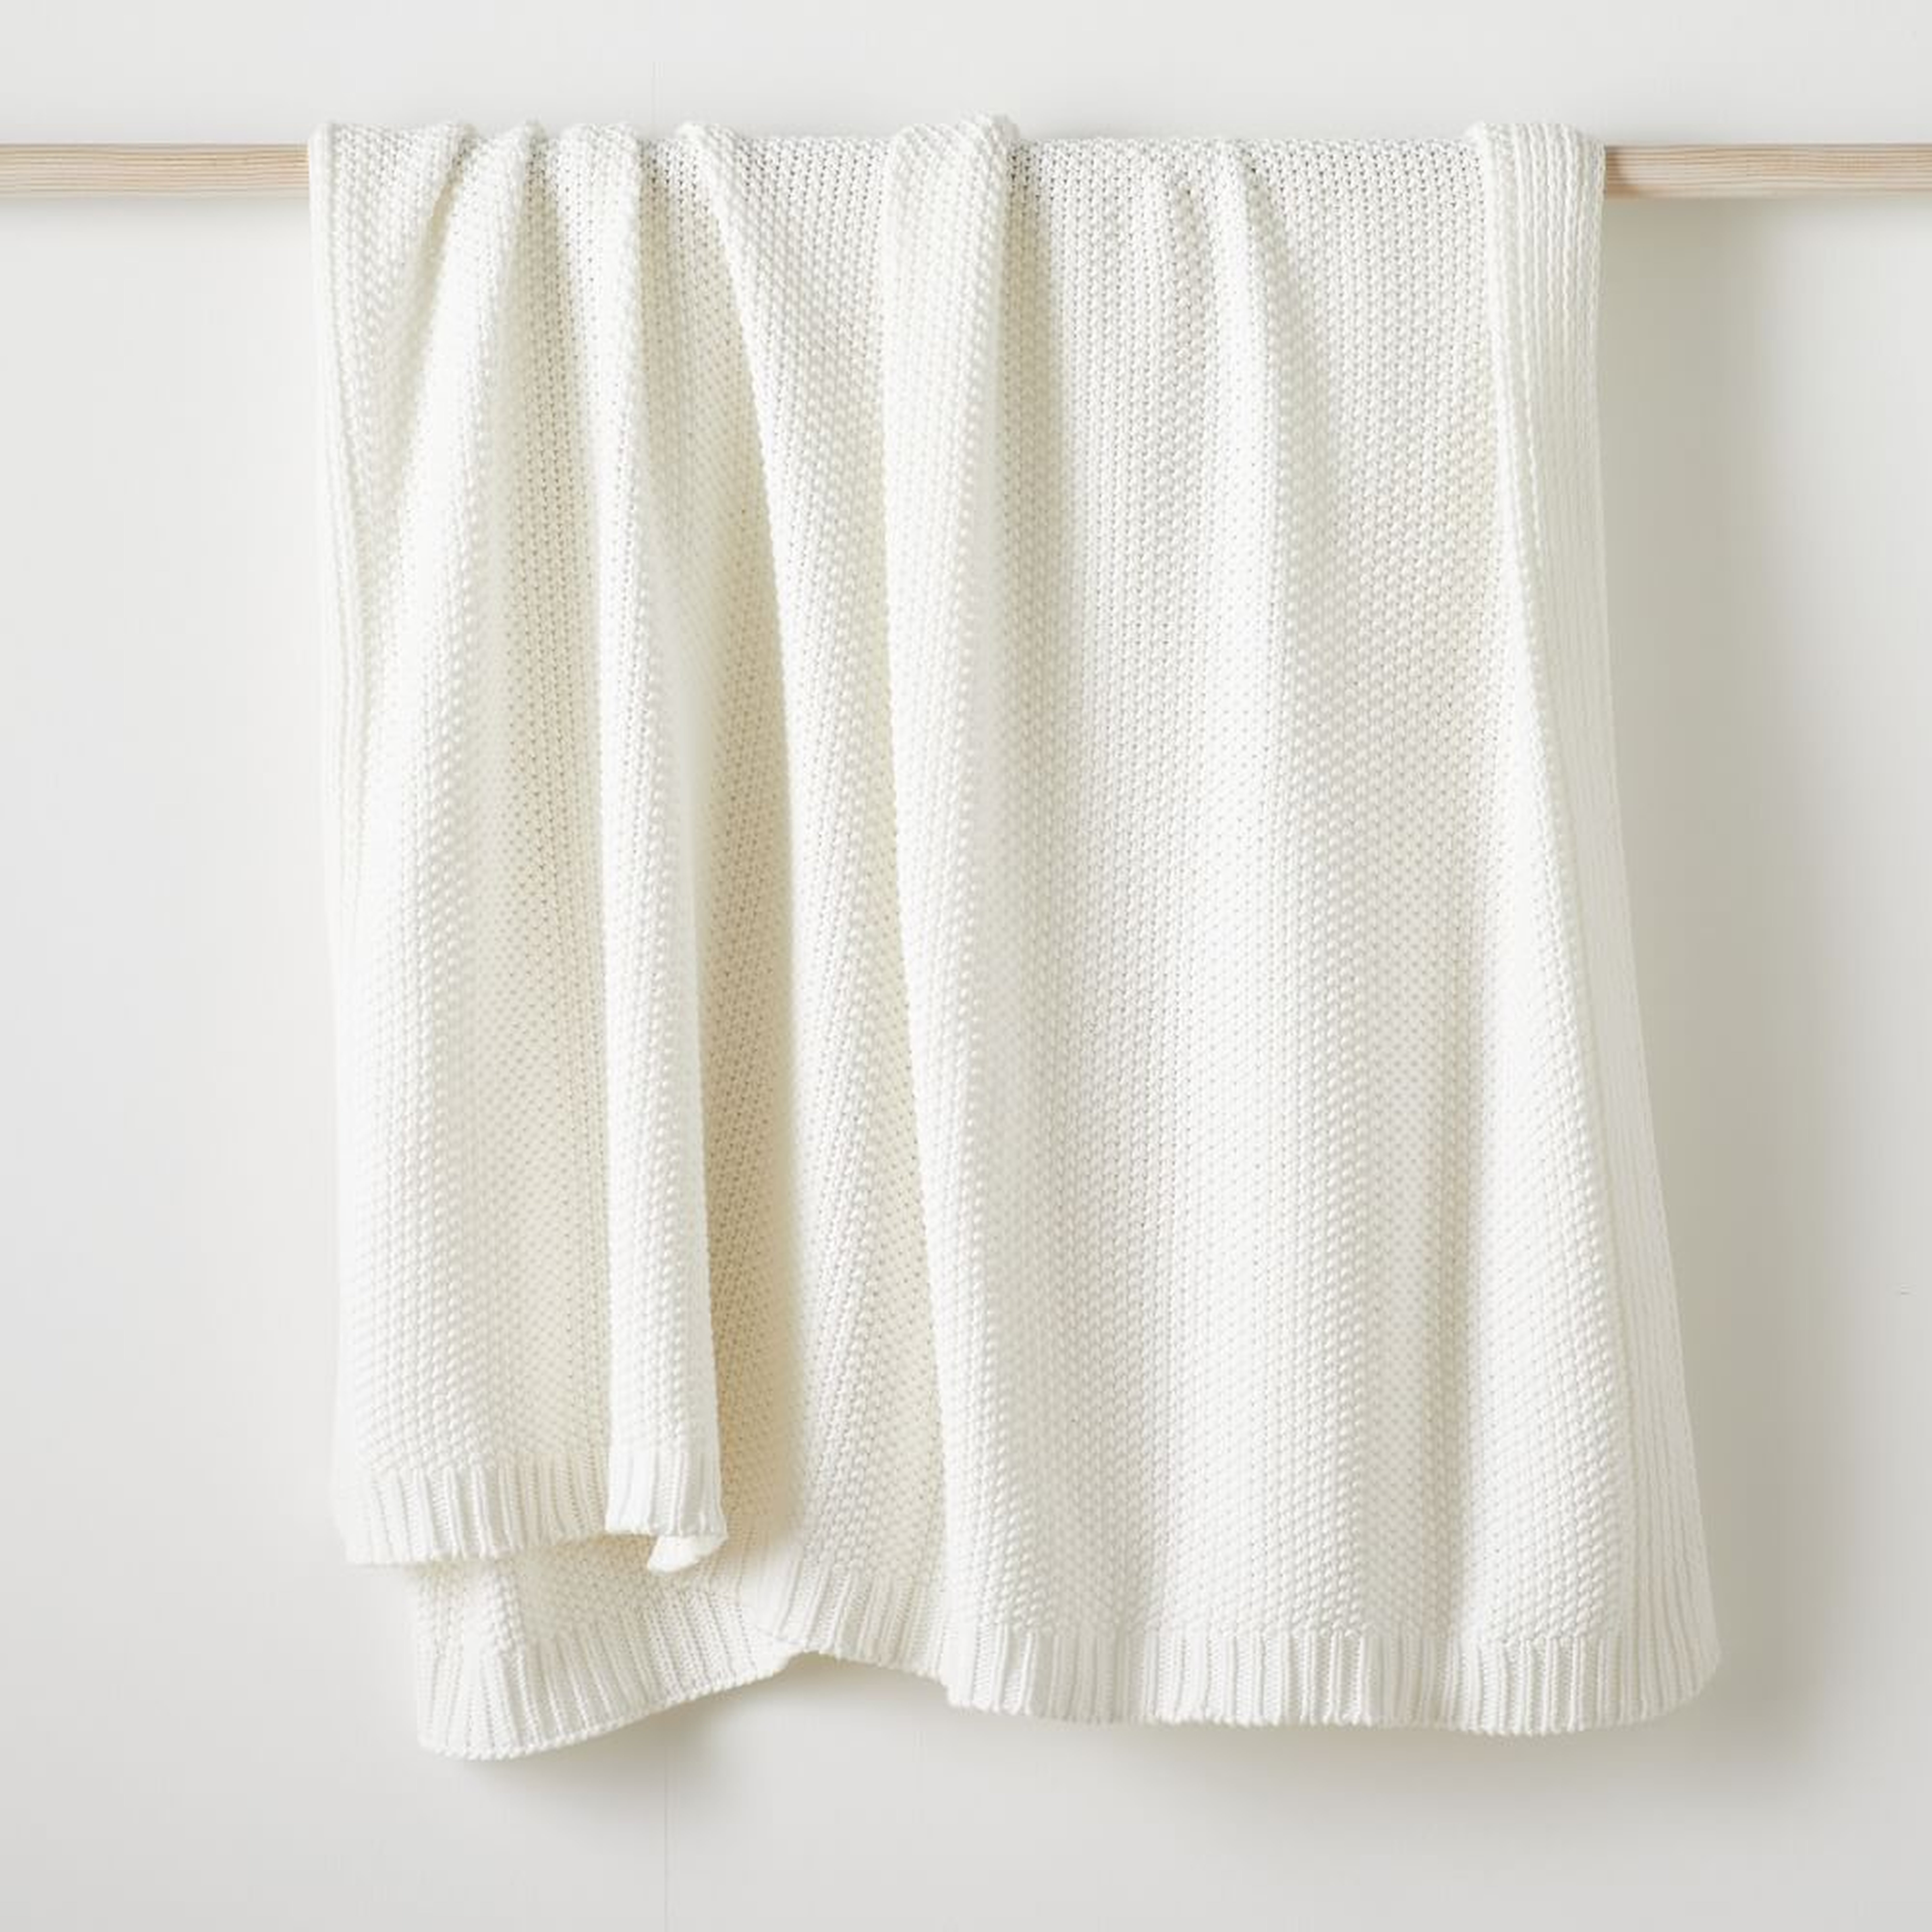 Cotton Knit Throw, White, 50"x60" - West Elm